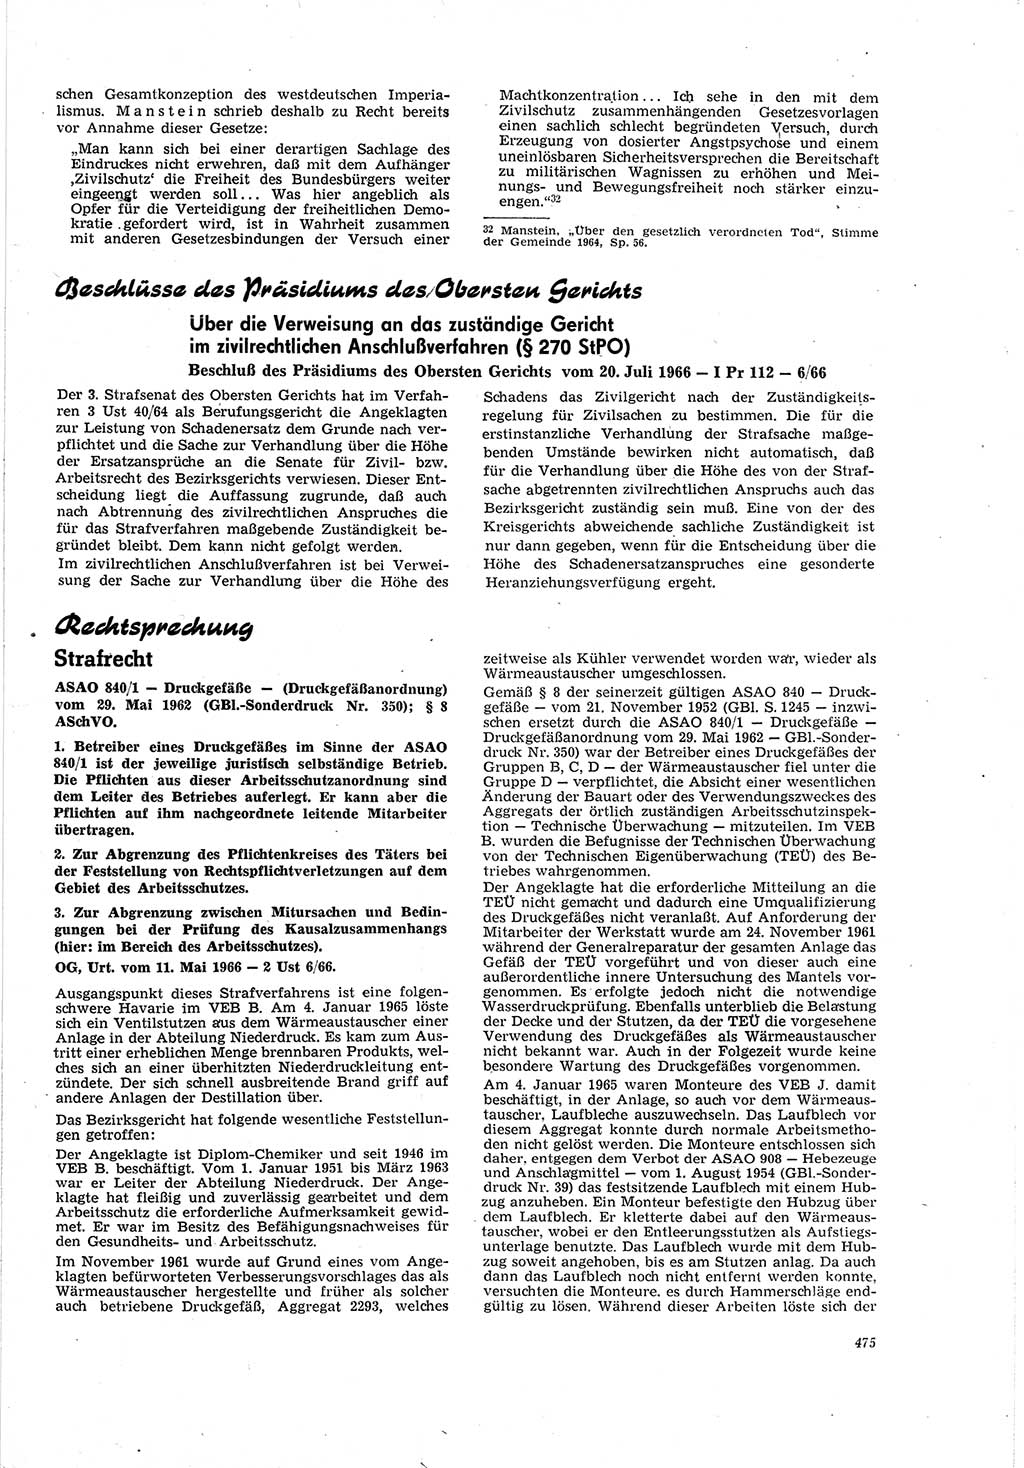 Neue Justiz (NJ), Zeitschrift für Recht und Rechtswissenschaft [Deutsche Demokratische Republik (DDR)], 20. Jahrgang 1966, Seite 475 (NJ DDR 1966, S. 475)